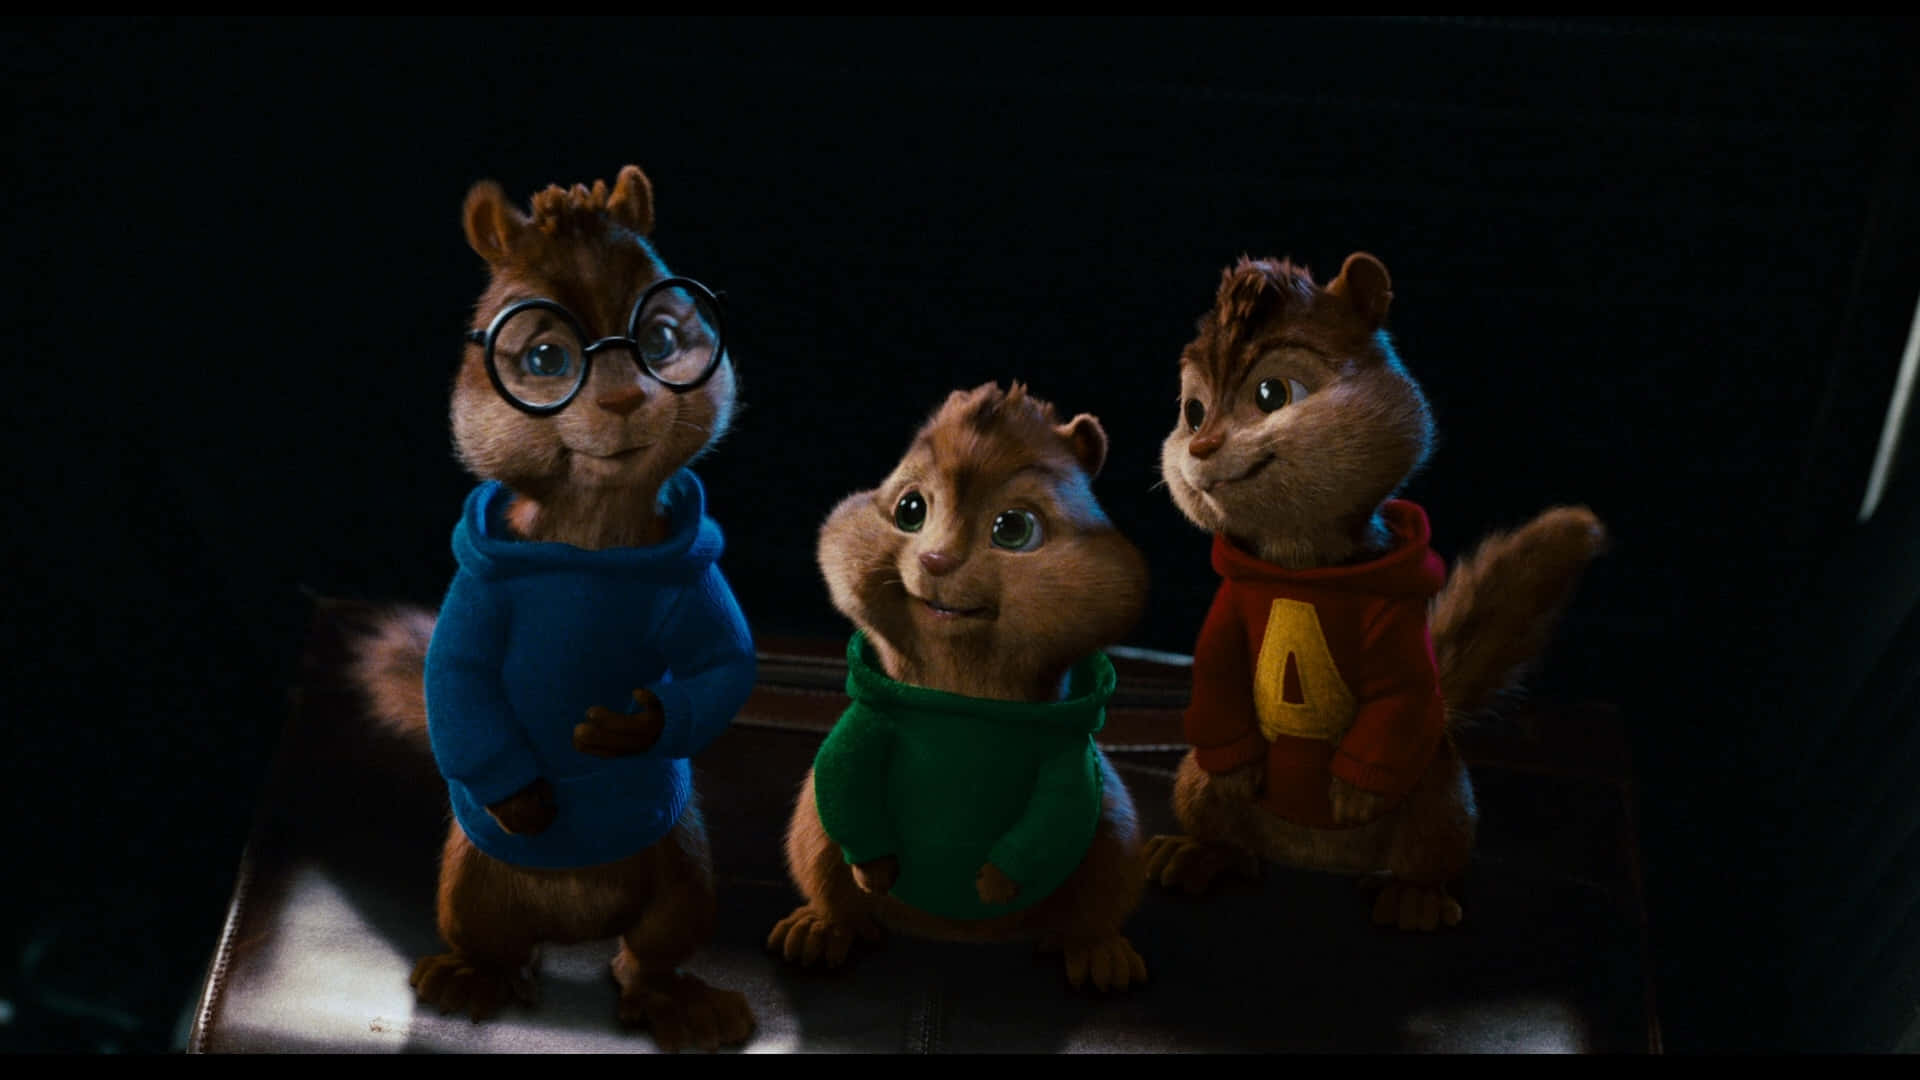 Alvinund Die Chipmunks Filmfiguren, Simon, Theodore Und Alvin In Einem Nostalgischen Moment.